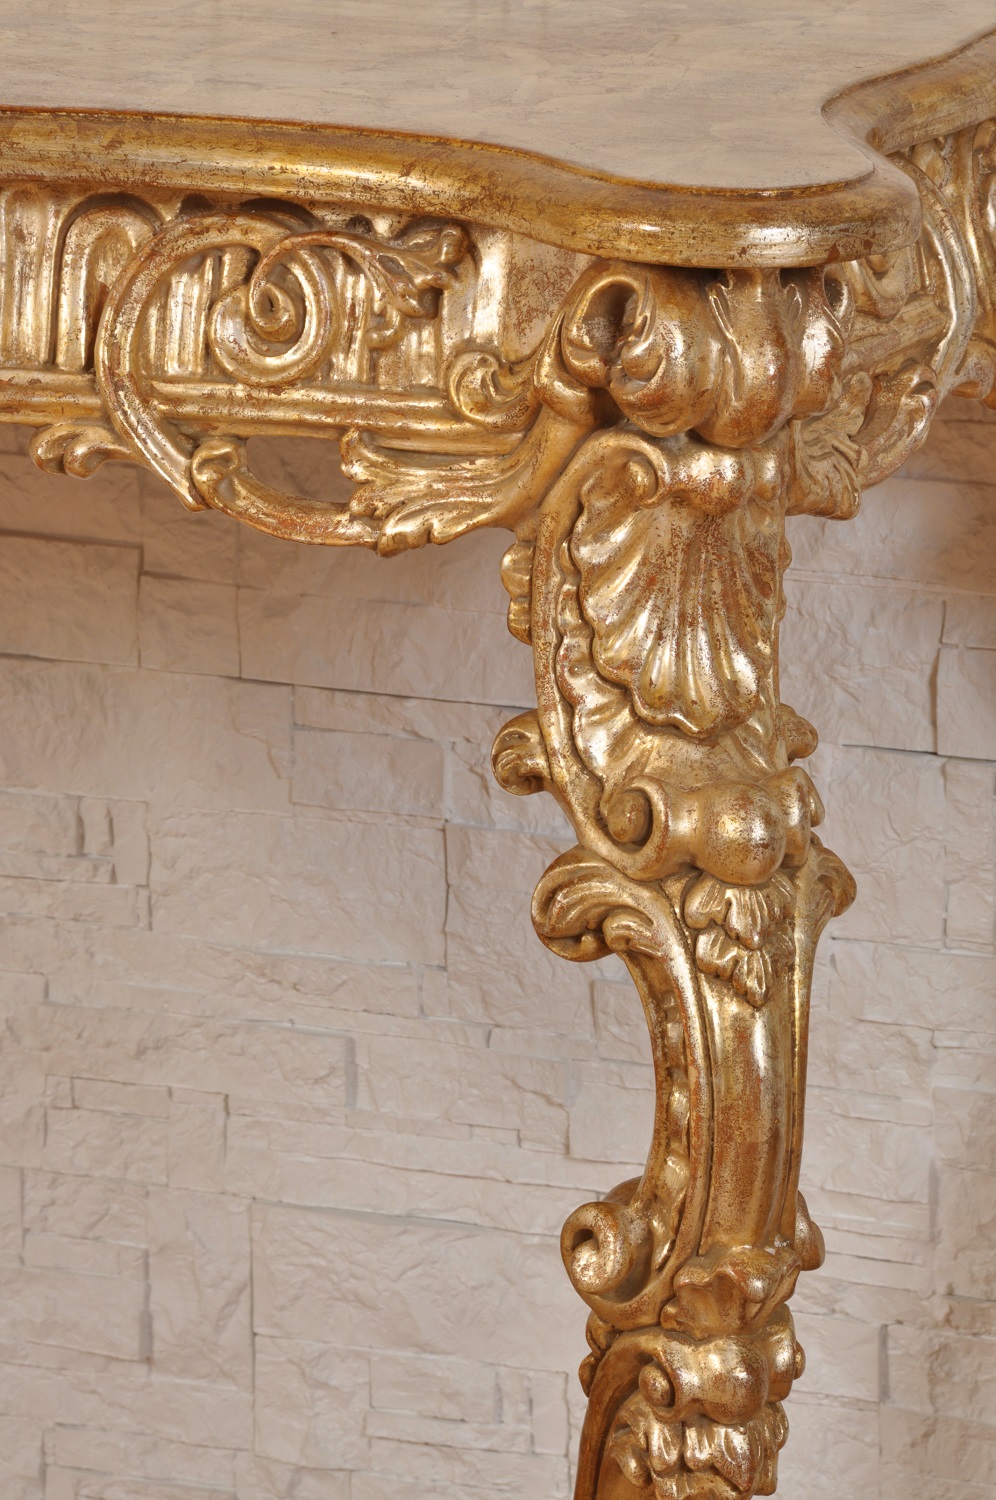 riproduzione consolle del 700 barocco veneziana sagomata e riccamente intagliata a mano nello stile classico settecento veneziano realizzabile su misura e mobile made in italy di lusso